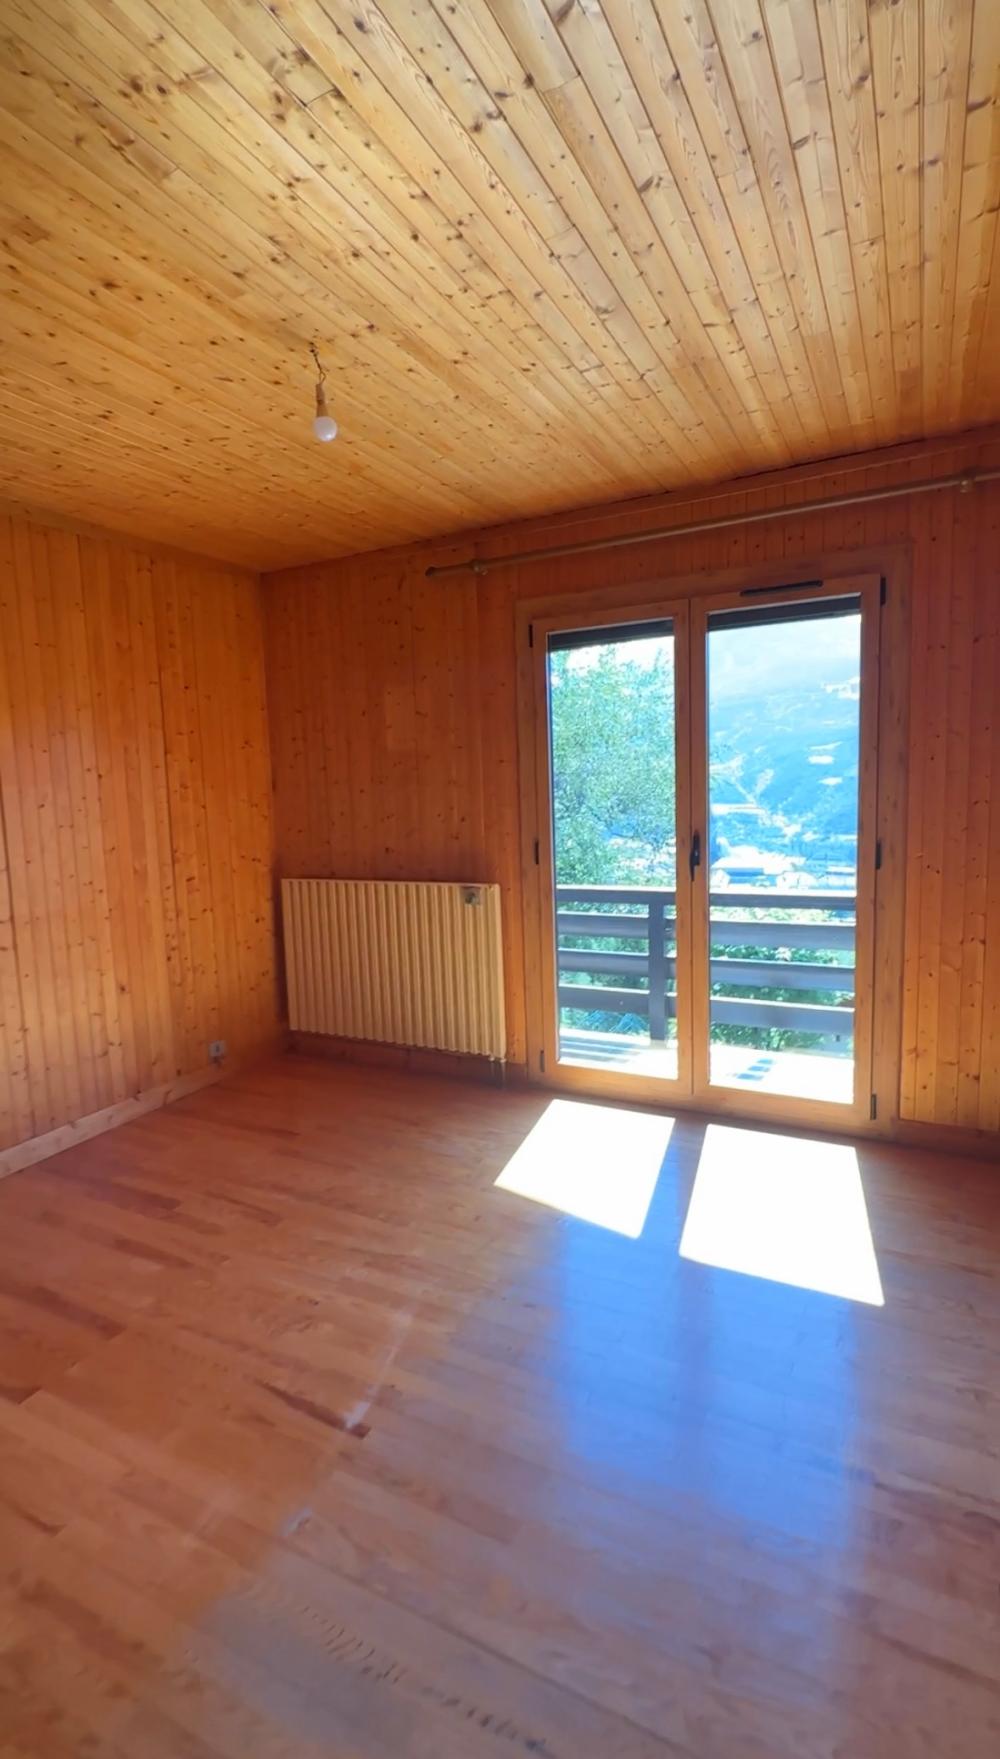  à vendre maison Embrun Hautes-Alpes 4